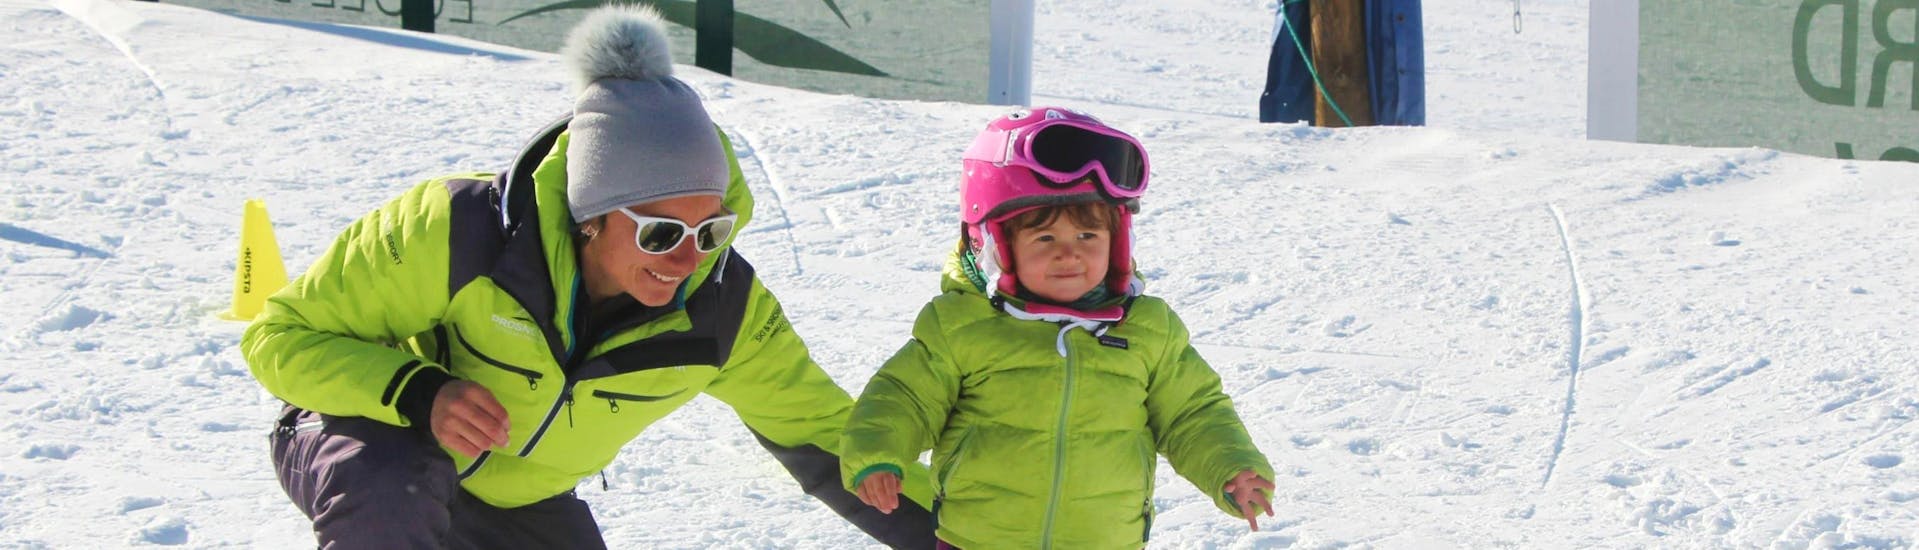 Lezioni di sci per bambini a partire da 3 anni principianti assoluti.